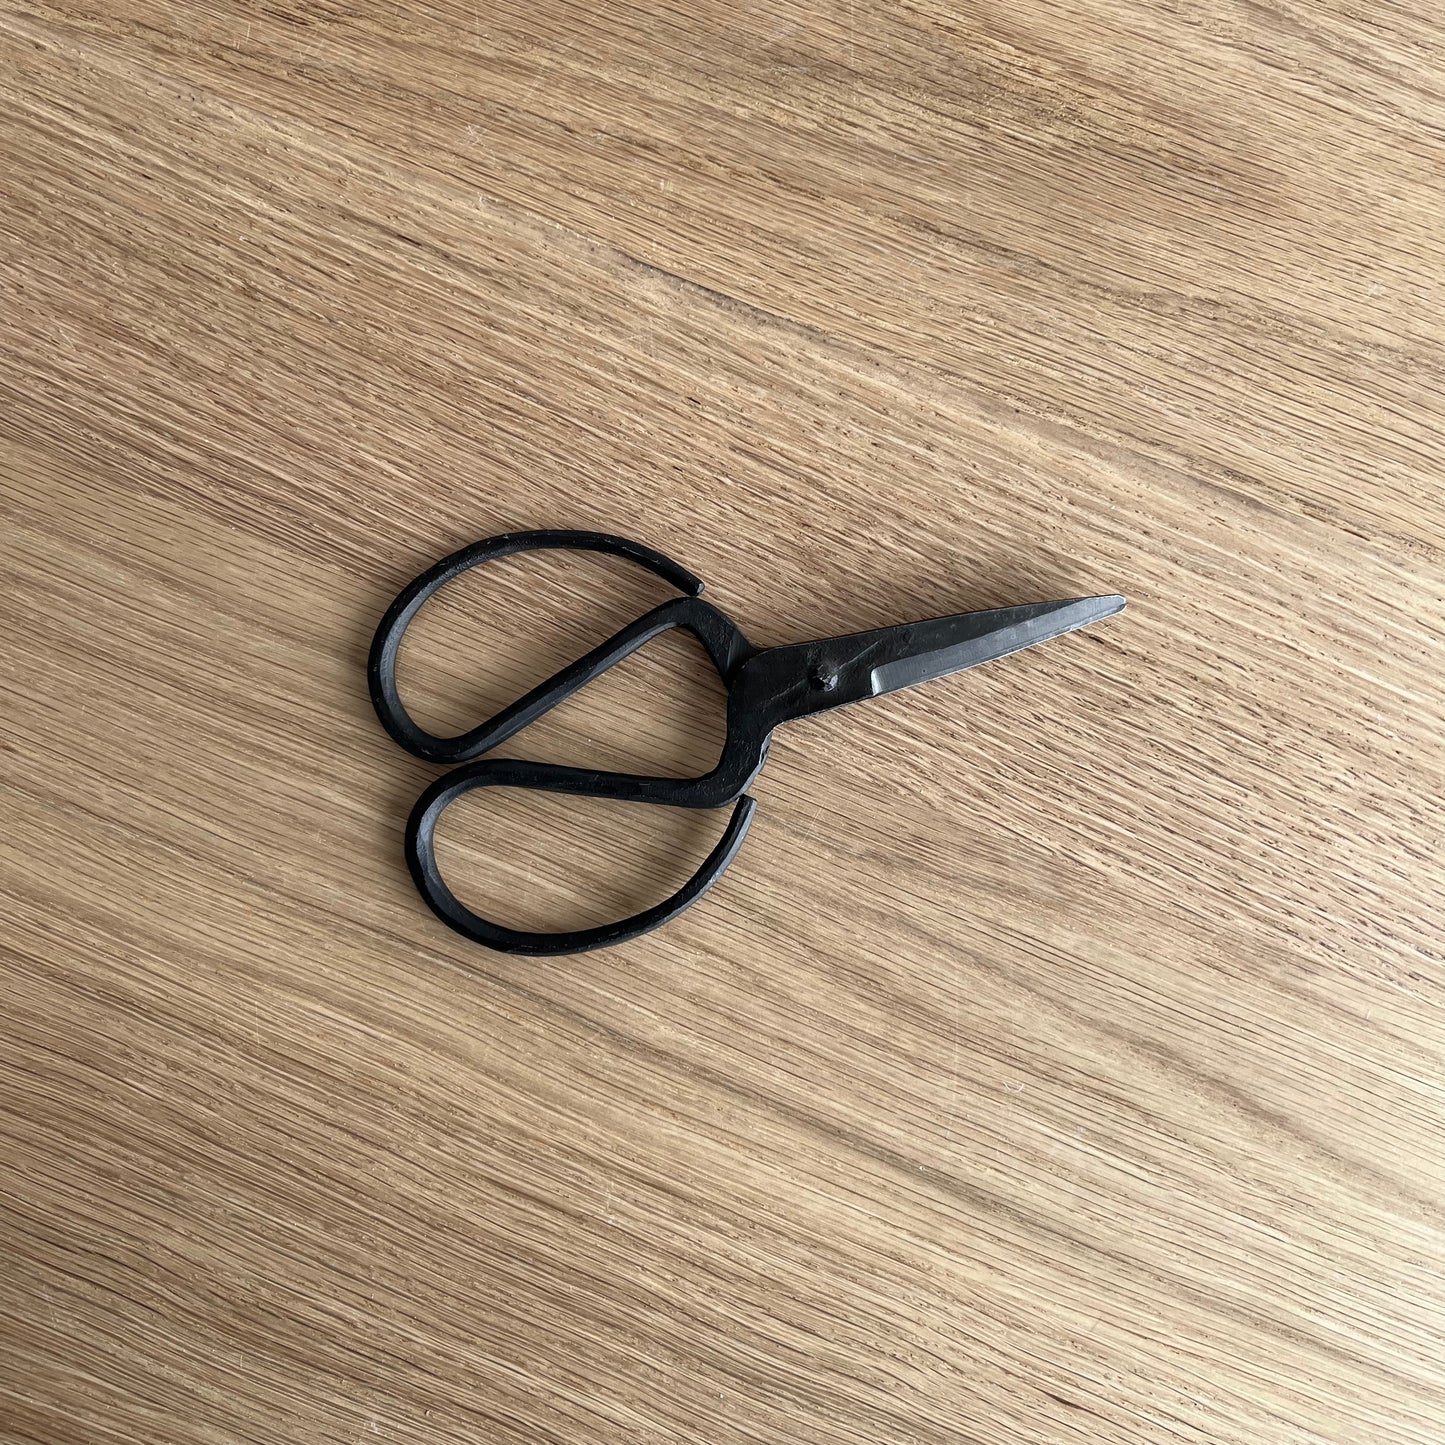 June Household Scissors